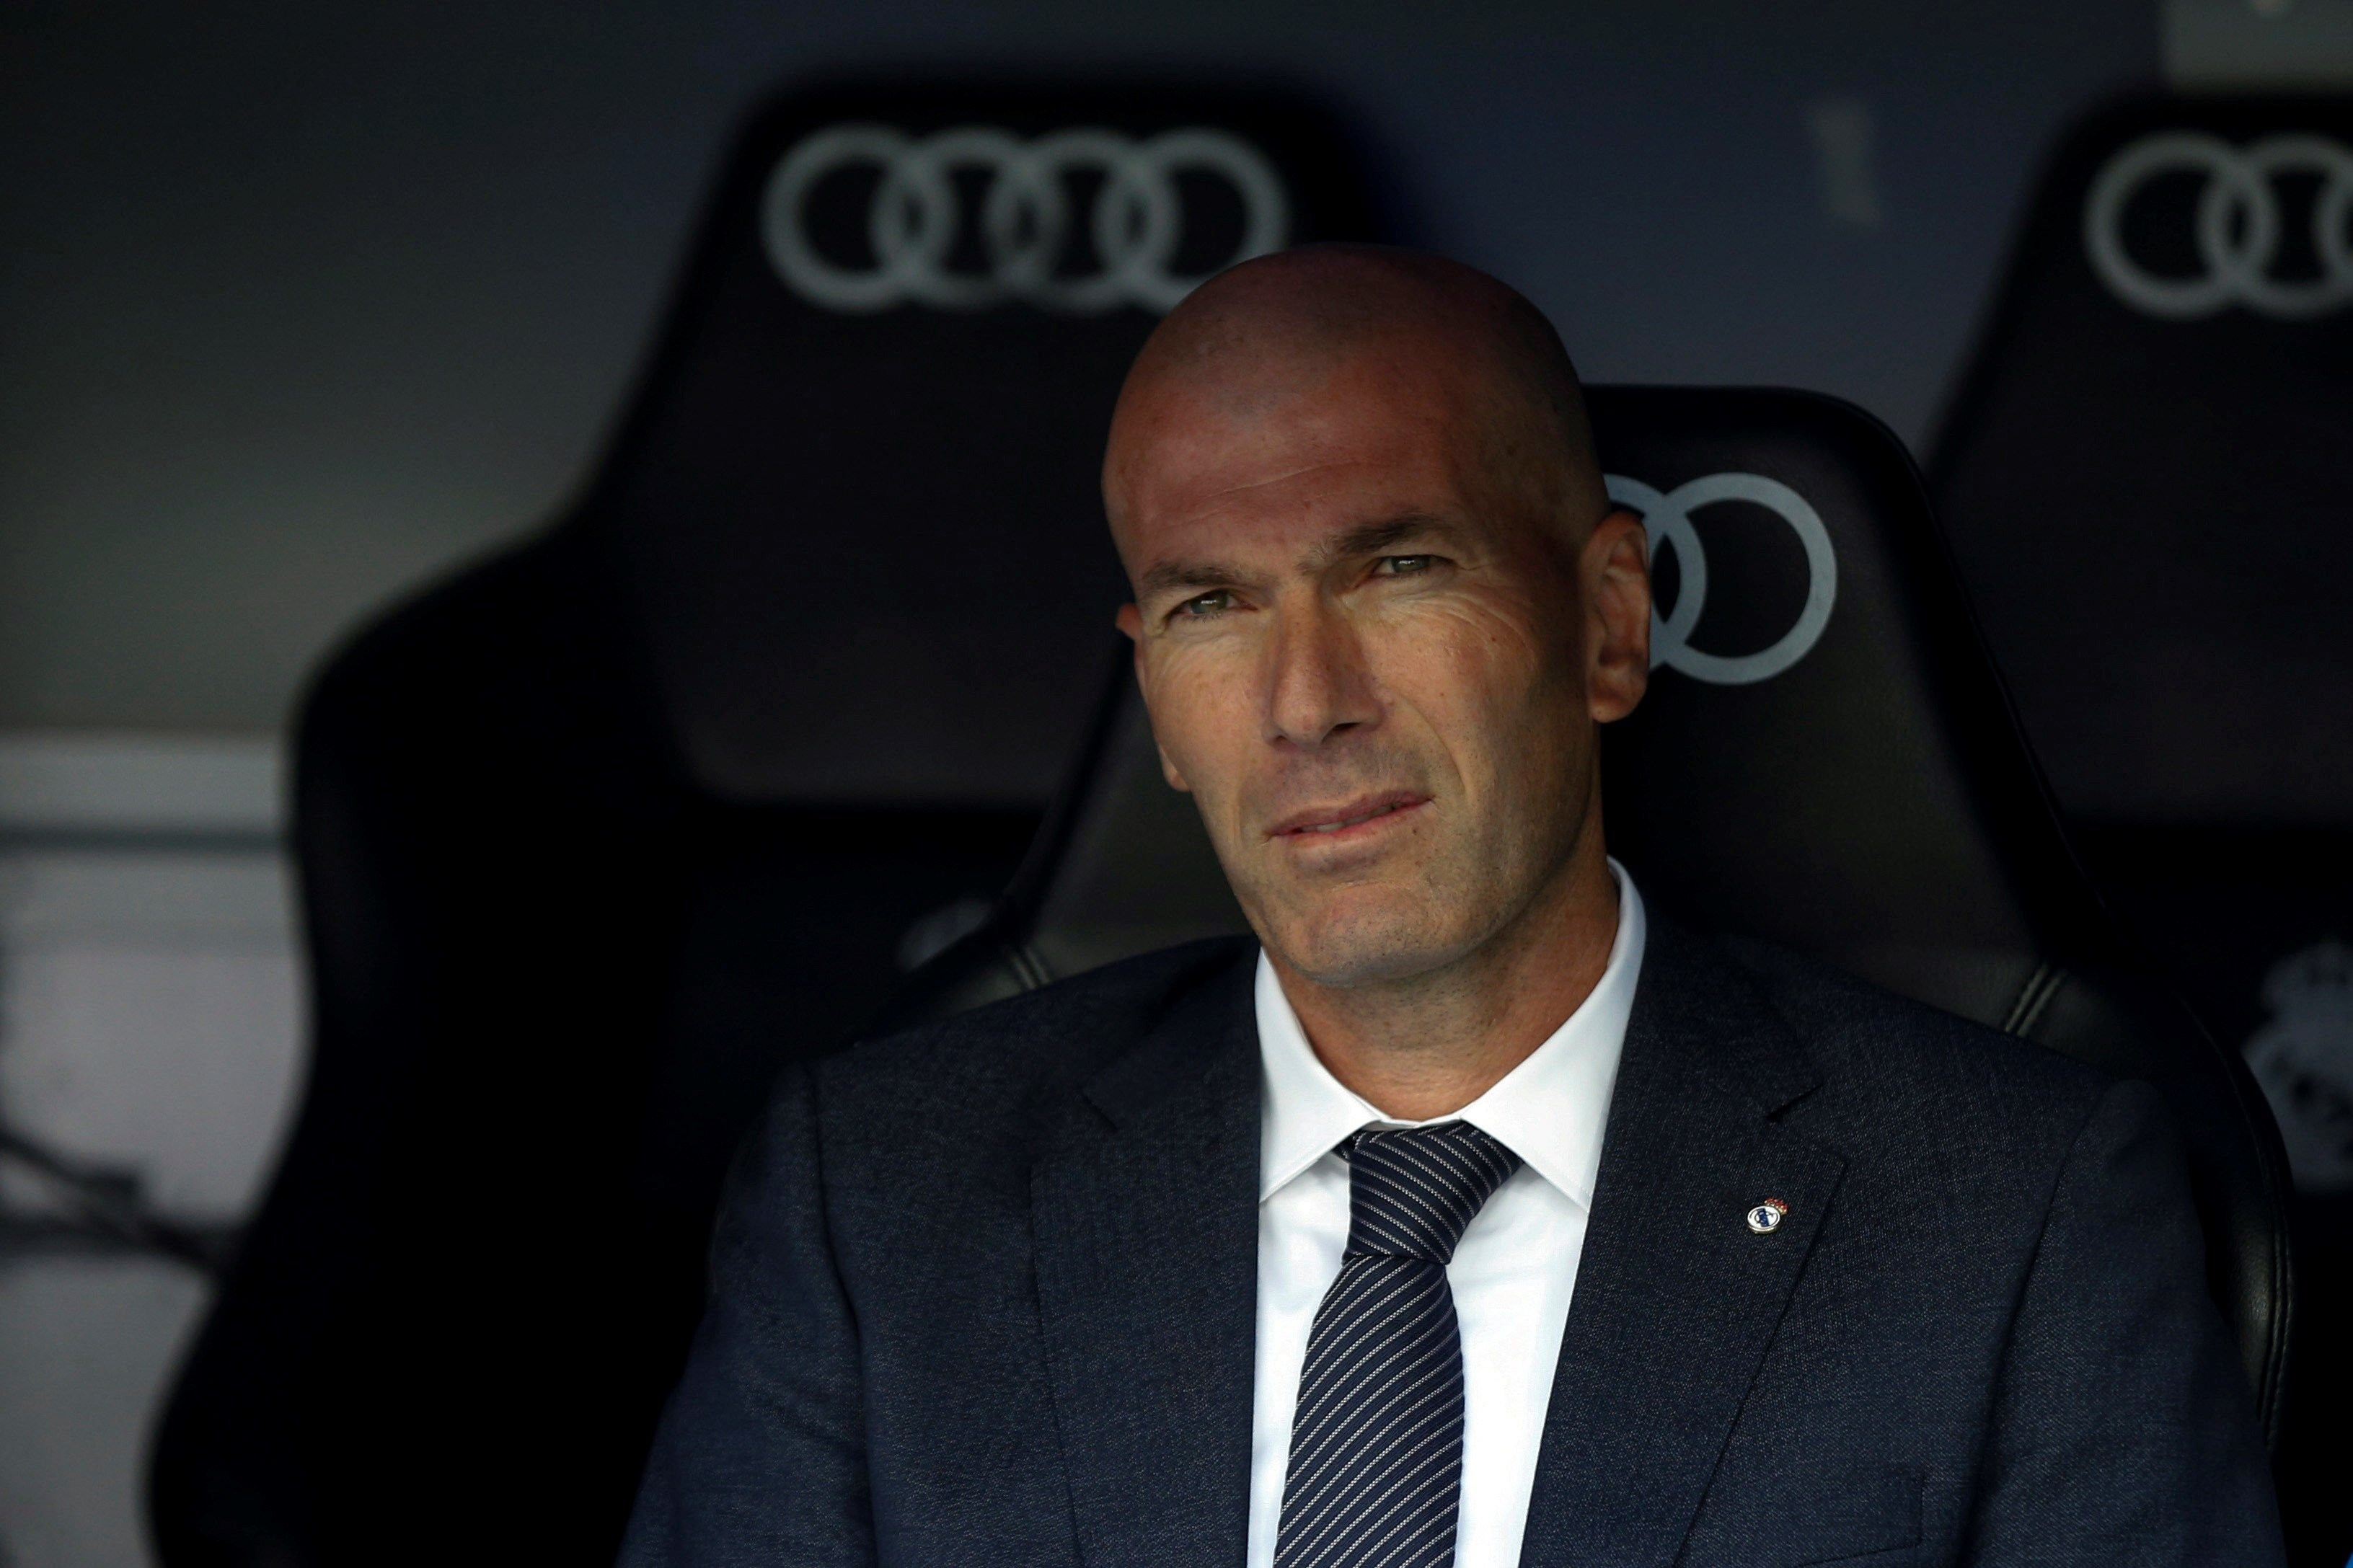 Zinedine Zidane en el banquillo del Santiago Bernabéu en el duelo frente al Real Betis / EFE